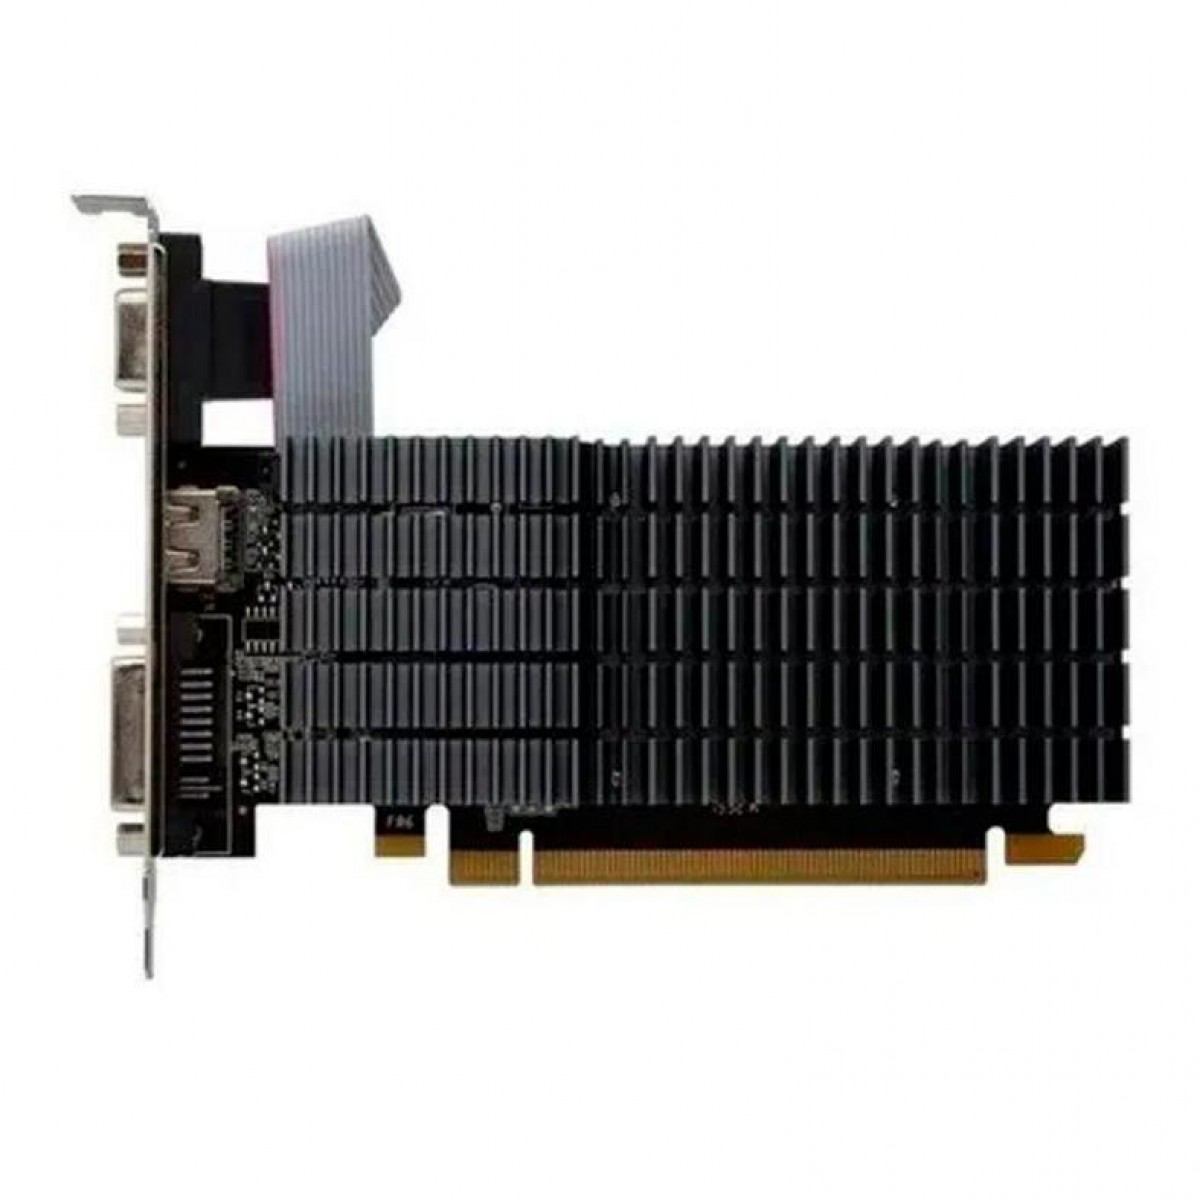 Placa de Vídeo Afox Radeon R5 220, 2GB, DDR3, AFR5220-2048D3L5-V2